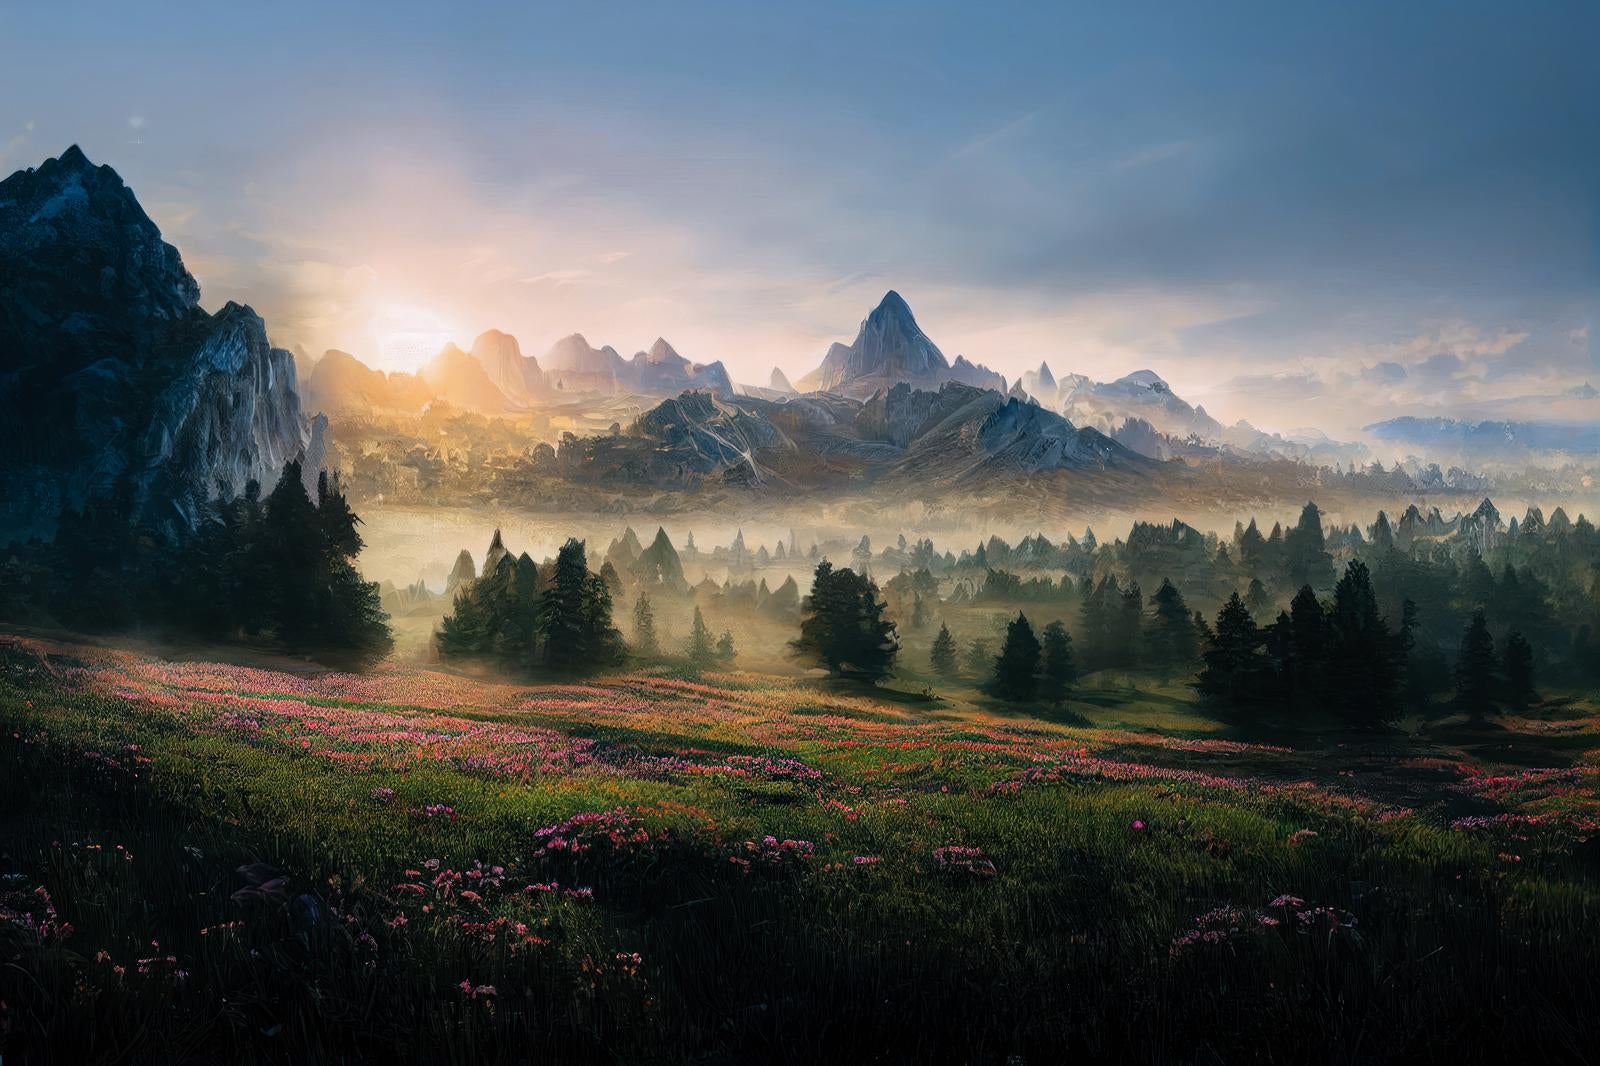 「朝焼けの高山植物 夜明けと朝靄の風景写真」の写真